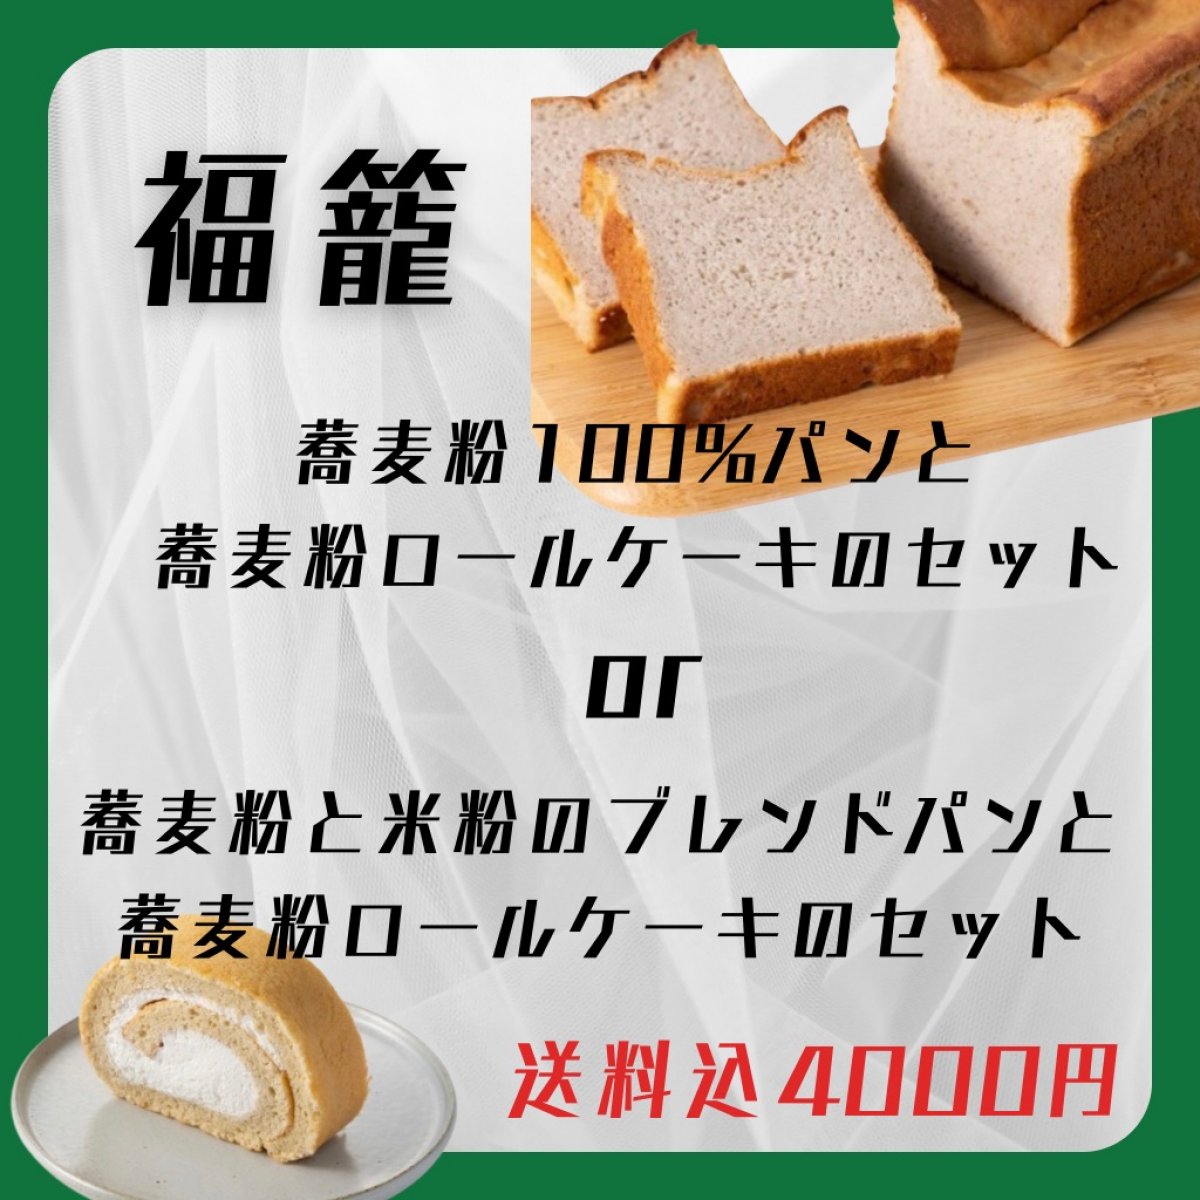 【 冷凍 】福籠さんの蕎麦粉を使ったパンと蕎麦粉ロールケーキのセット